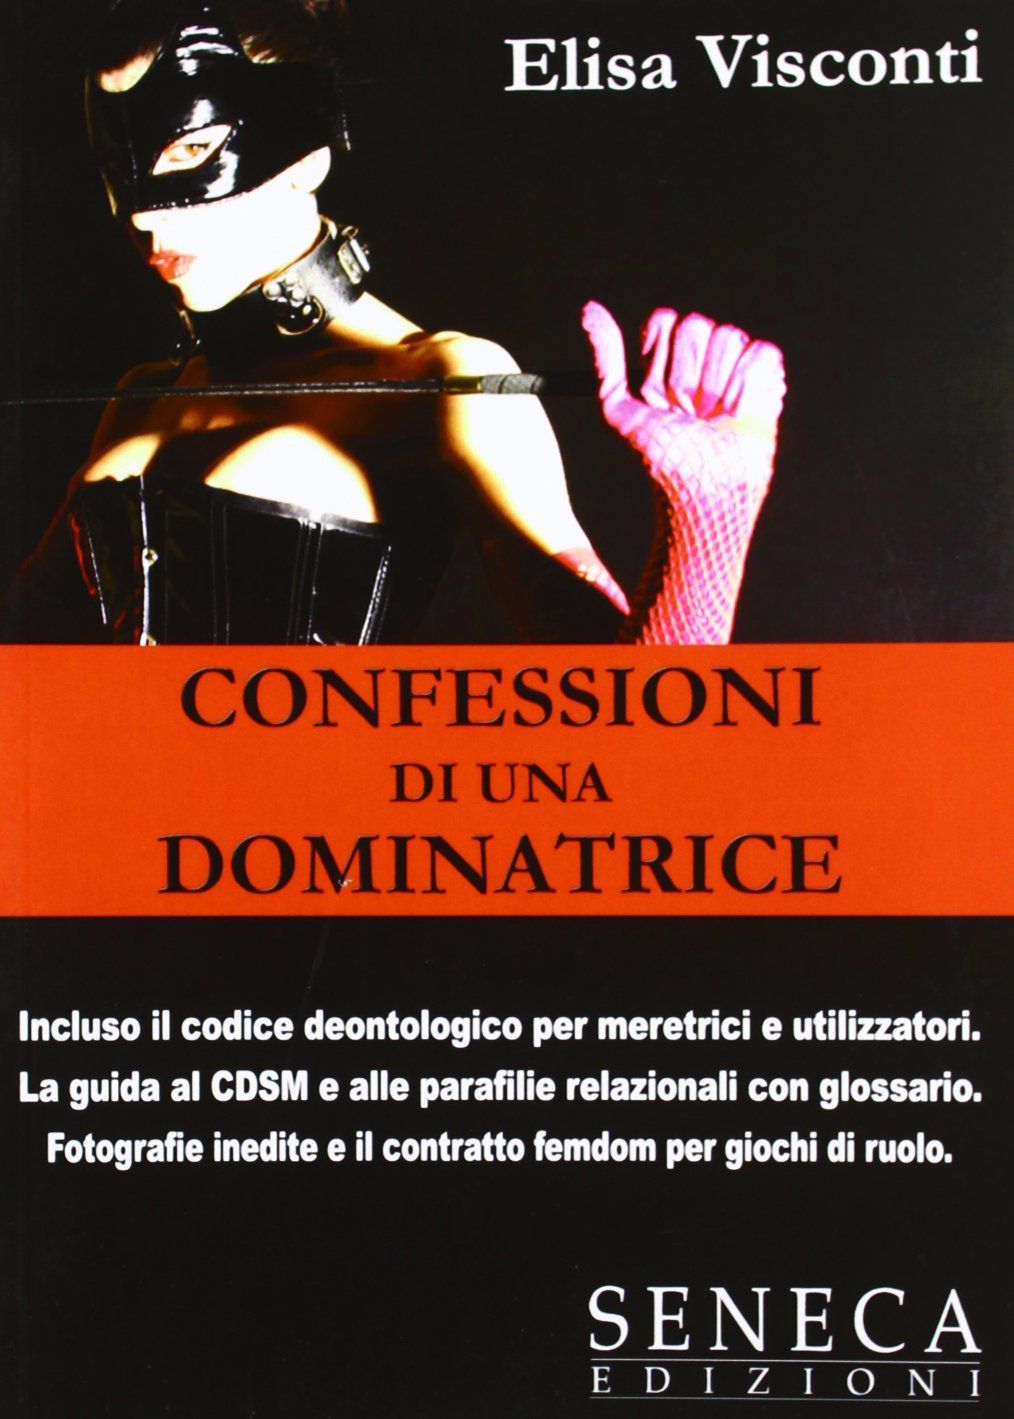 su eBay c’è “Confessioni di una dominatrice” di Elisa Visconti – raro & proibito